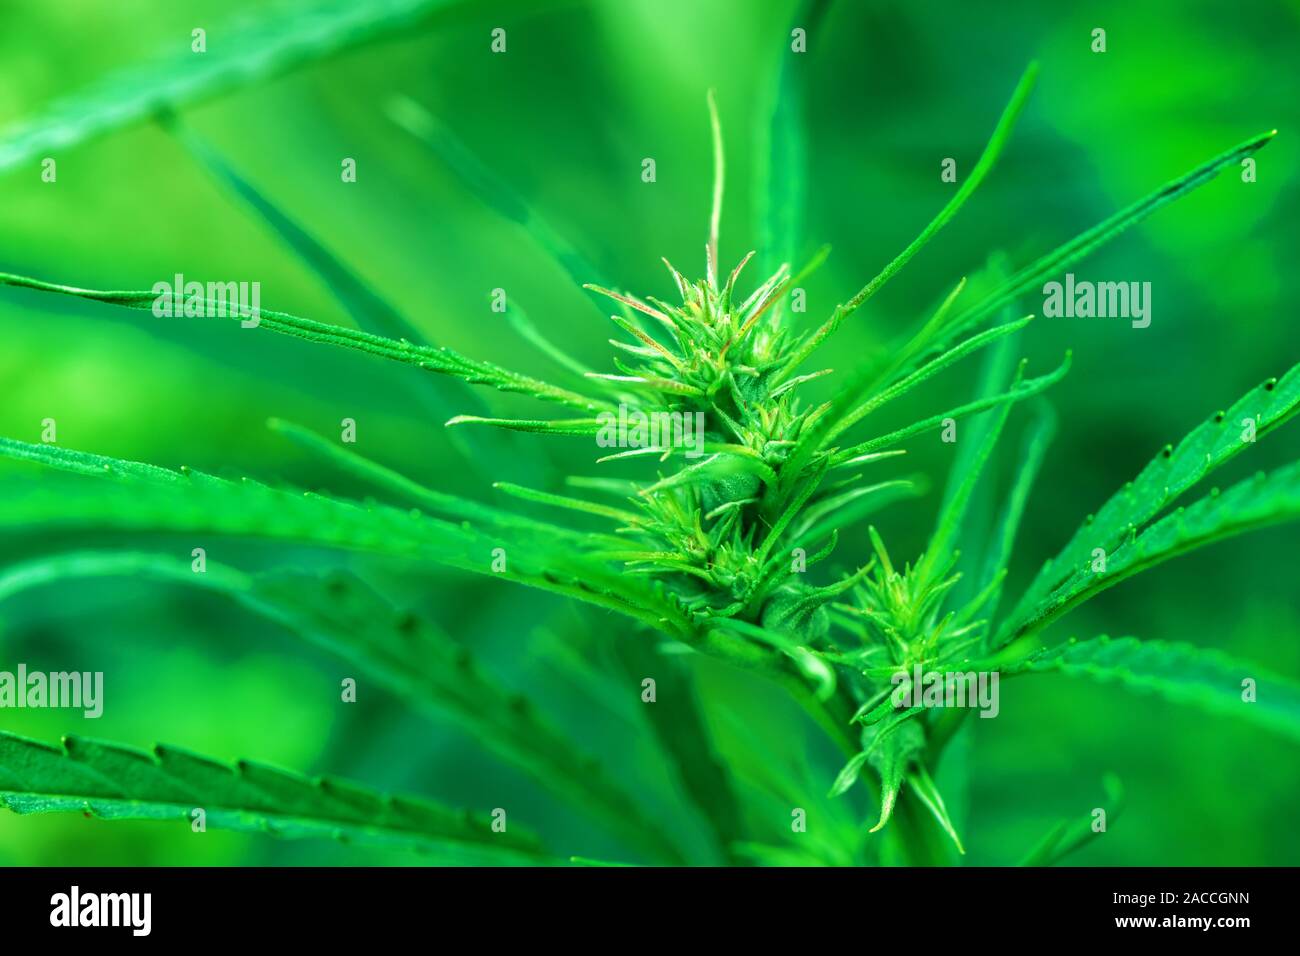 Le chanvre industriel macro tête cultivée, Cannabis sativa espèces végétales cultivées pour l'utilisation de ses produits dérivés Banque D'Images